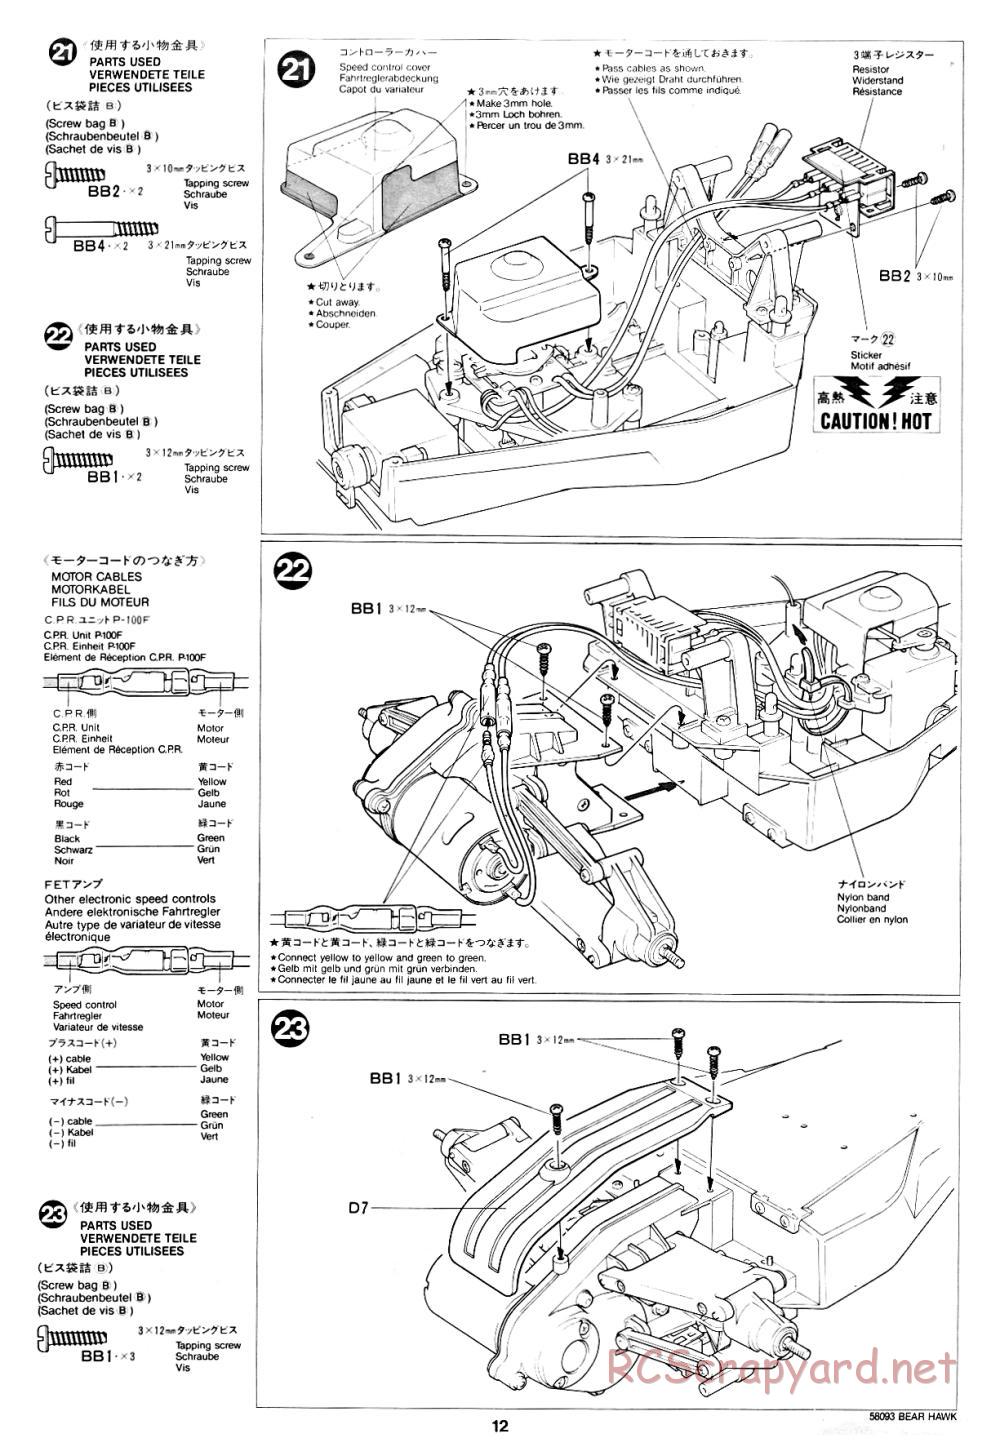 Tamiya - Bear Hawk - 58093 - Manual - Page 12